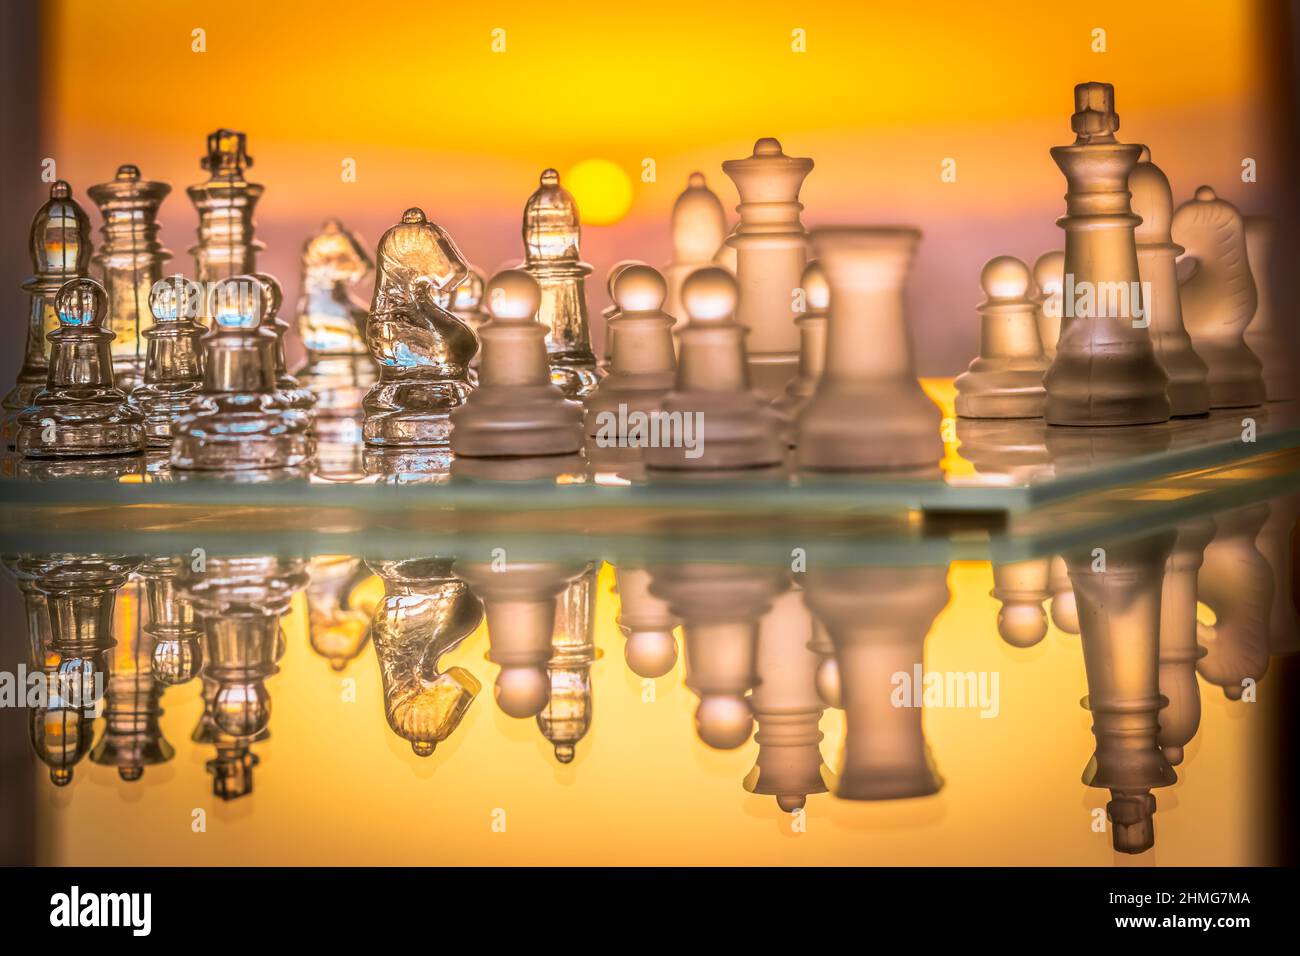 Ajedrez conjunto con piezas de vidrio y tablero de ajedrez horizontal reflejado con una puesta de sol de color naranja saturado en el fondo. Foto de stock